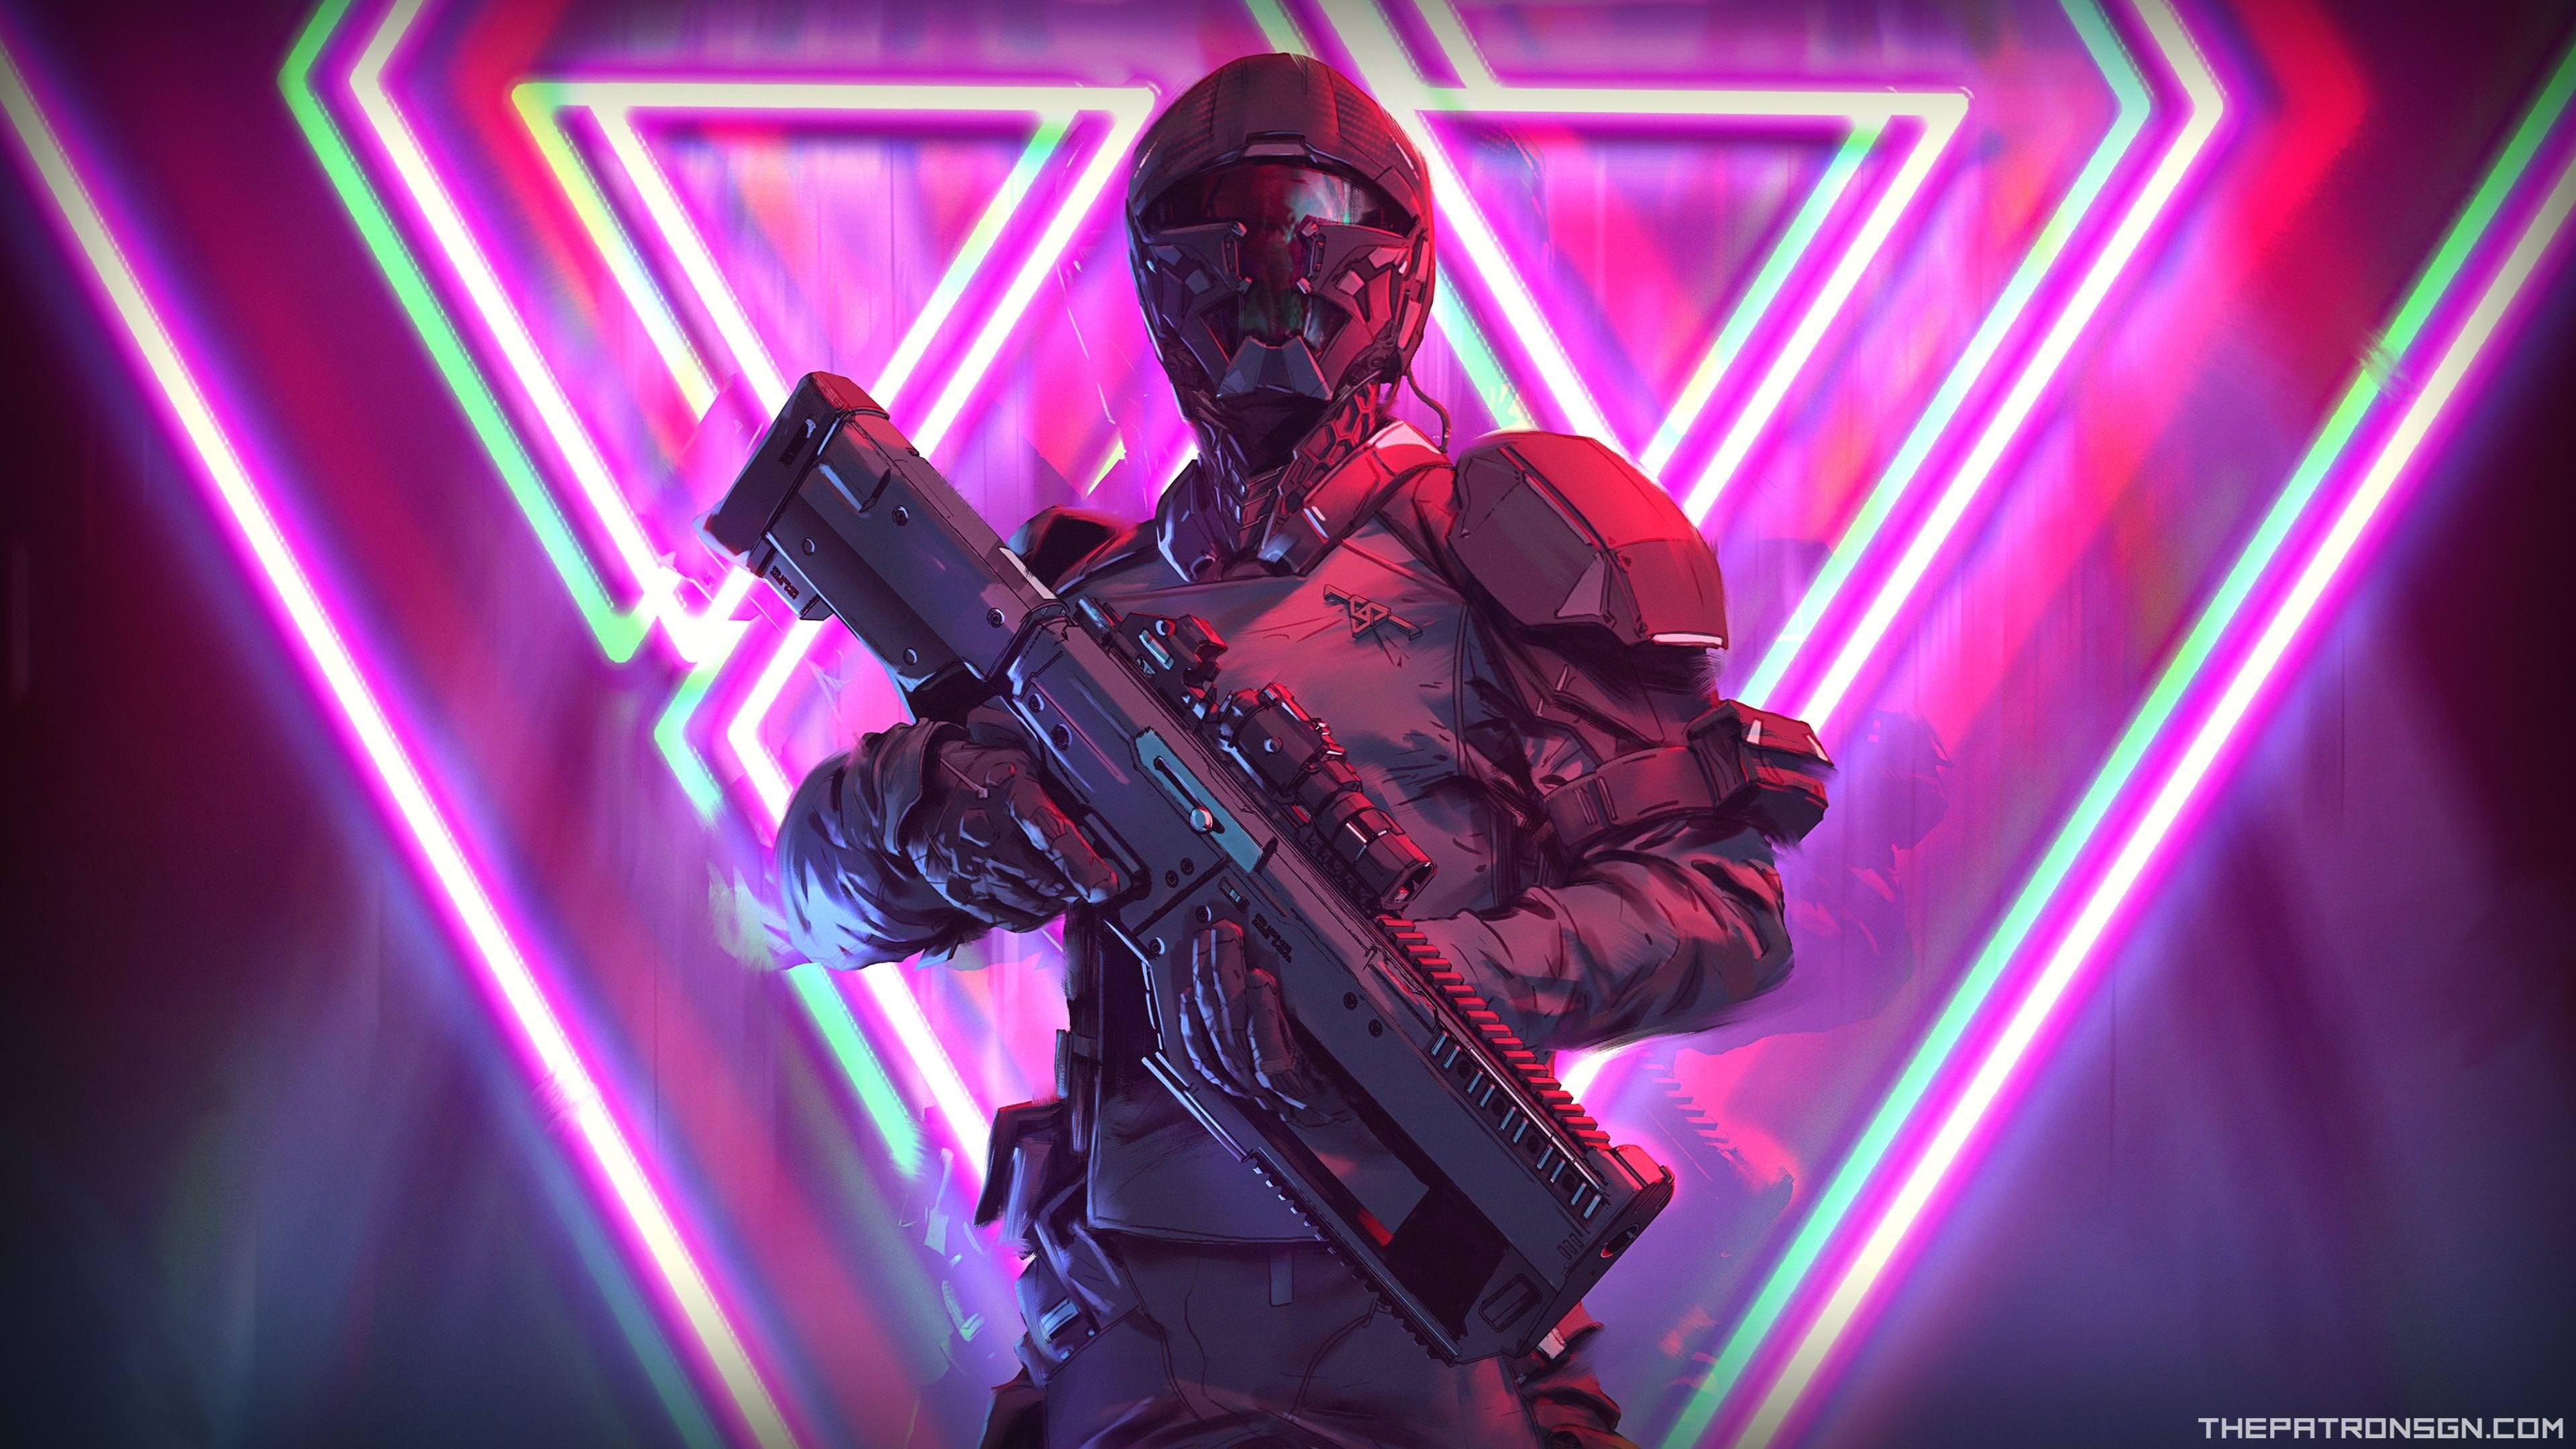 Wallpaper 4k Neon Weapon Soldier Science Fiction 4k Wallpaper